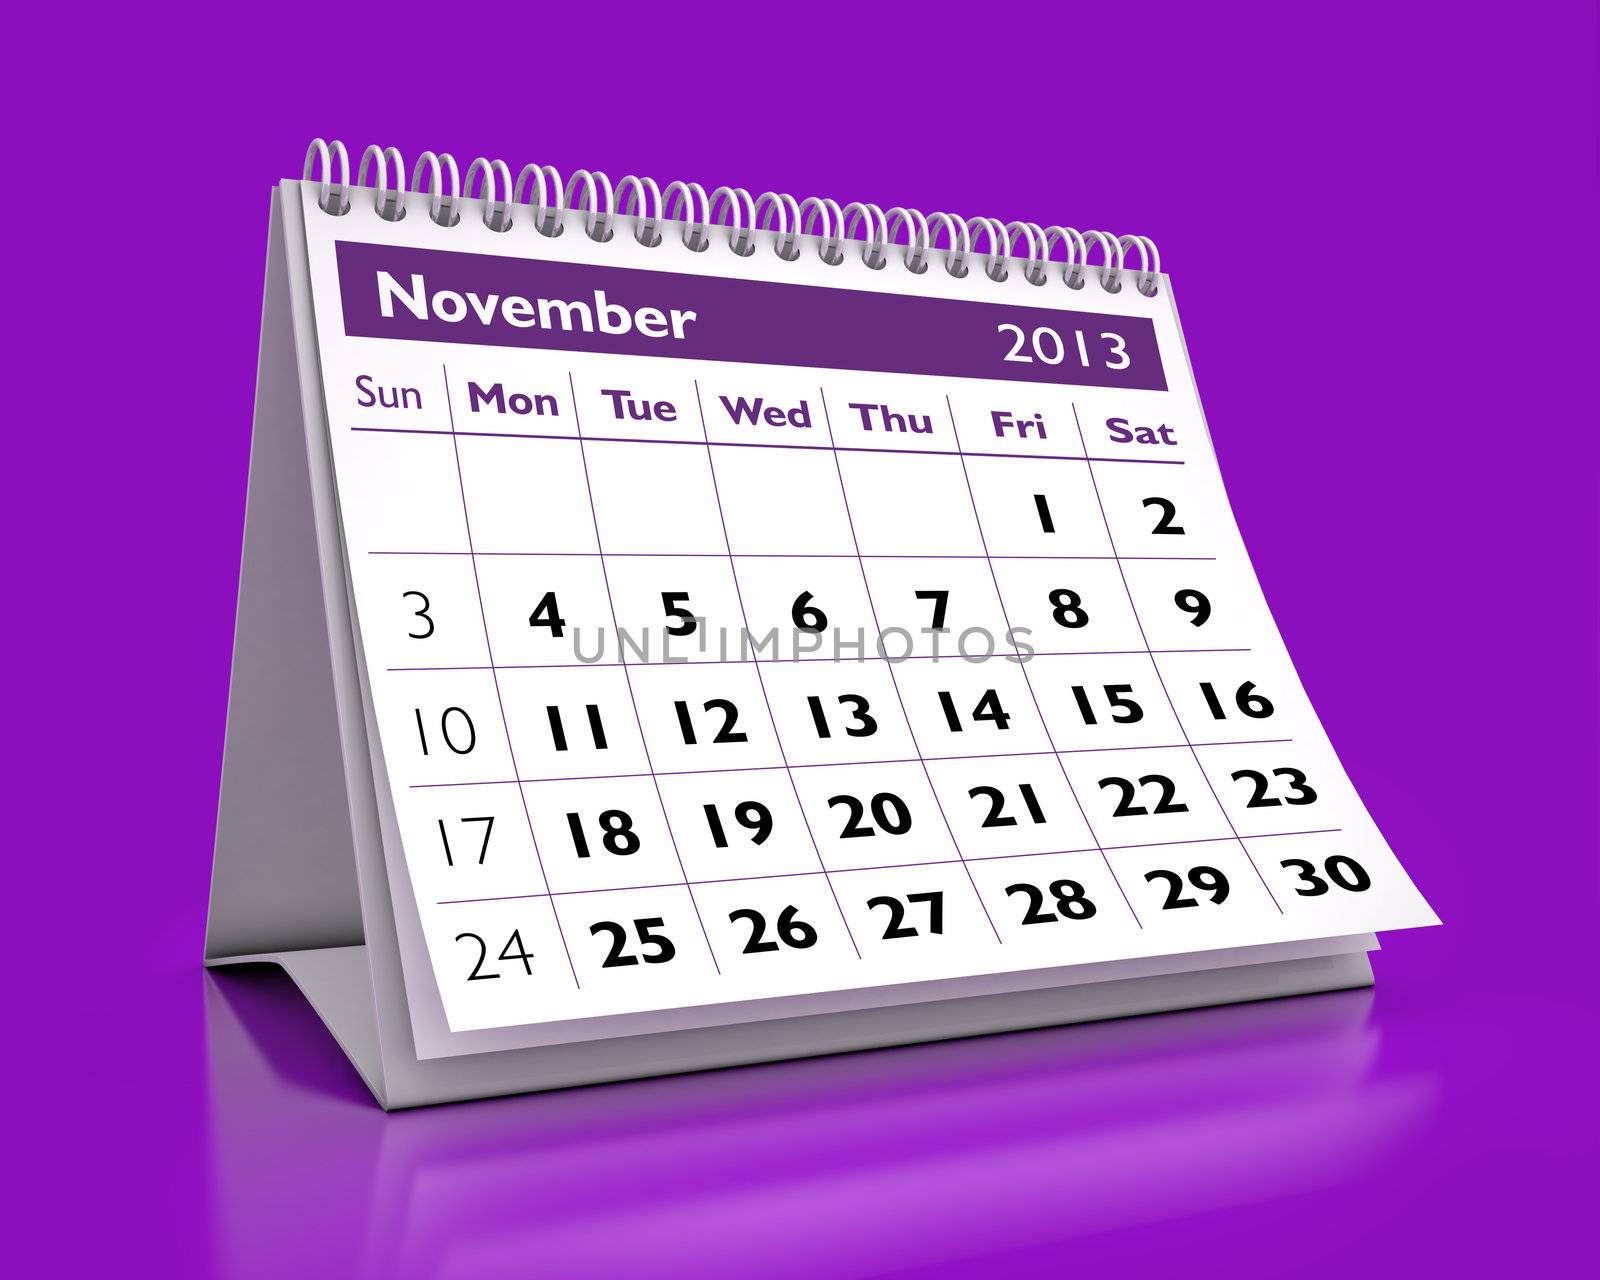 3D desktop calendar November 2013 in color background